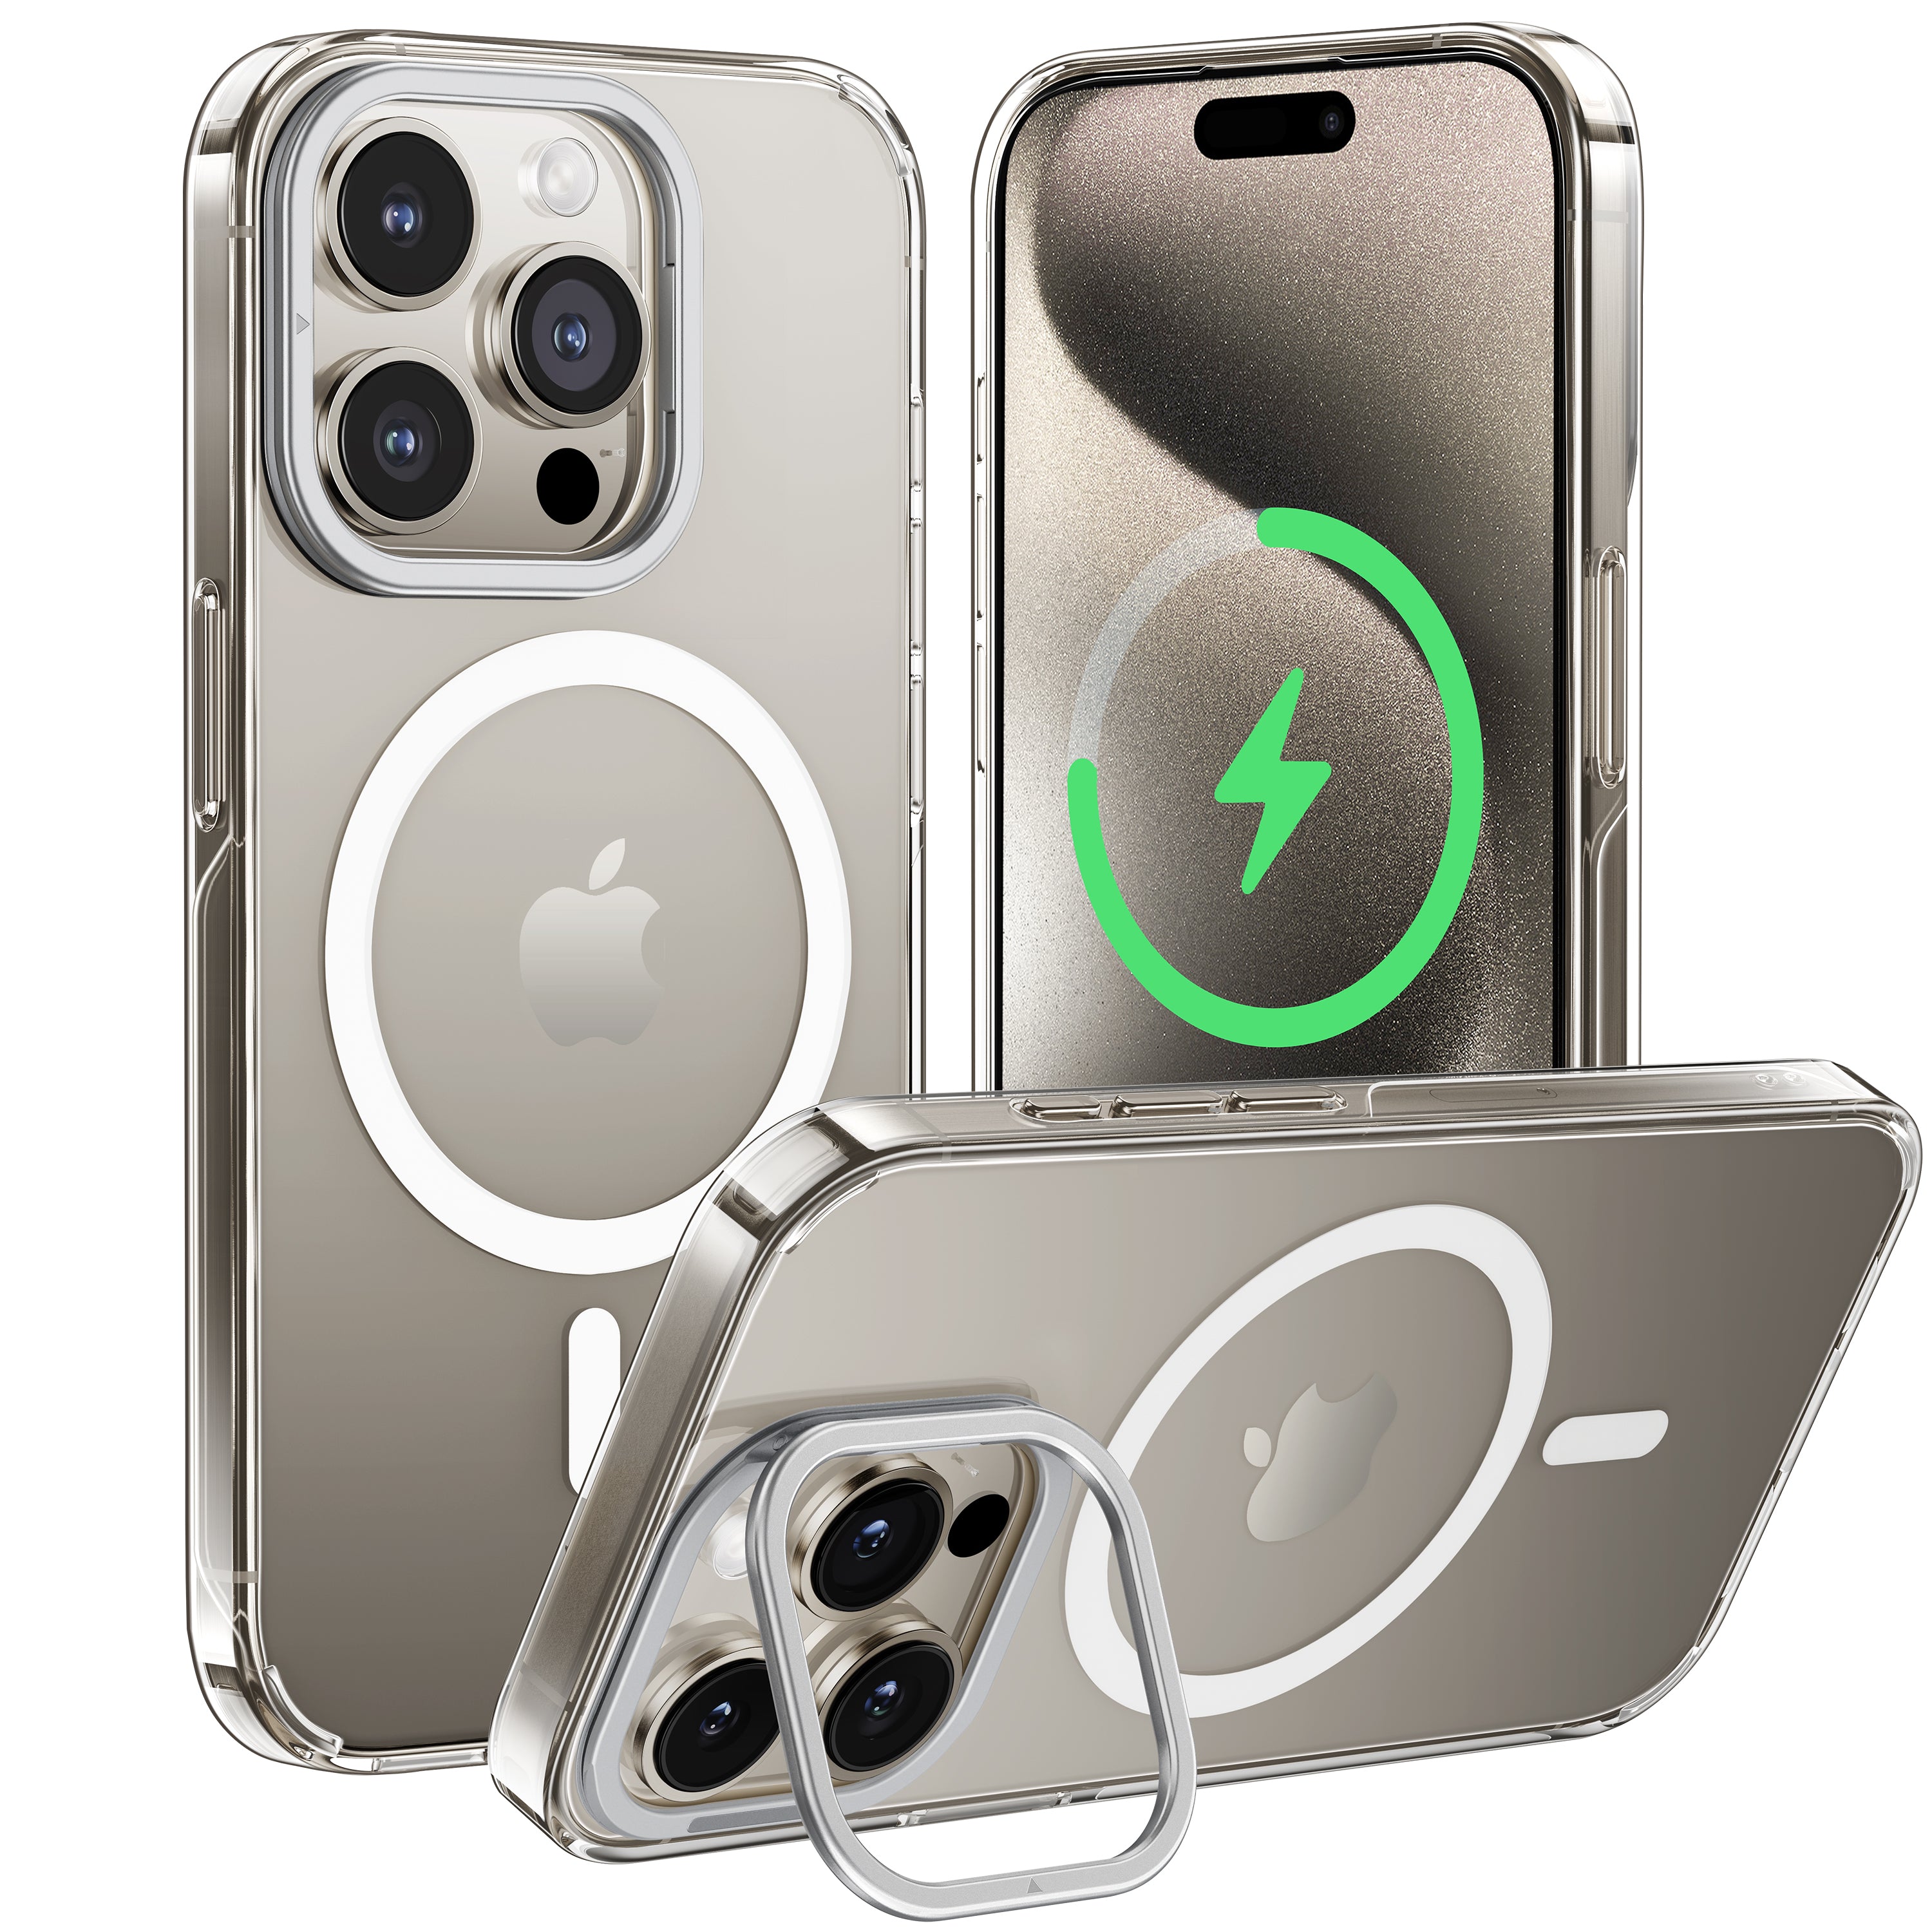 CASEKOO iPhone 黄ばみ防止クリア電話ケース キックスタンド付き MagSafe 対応 - クリアロックシリーズ レンズスタンドバージョン